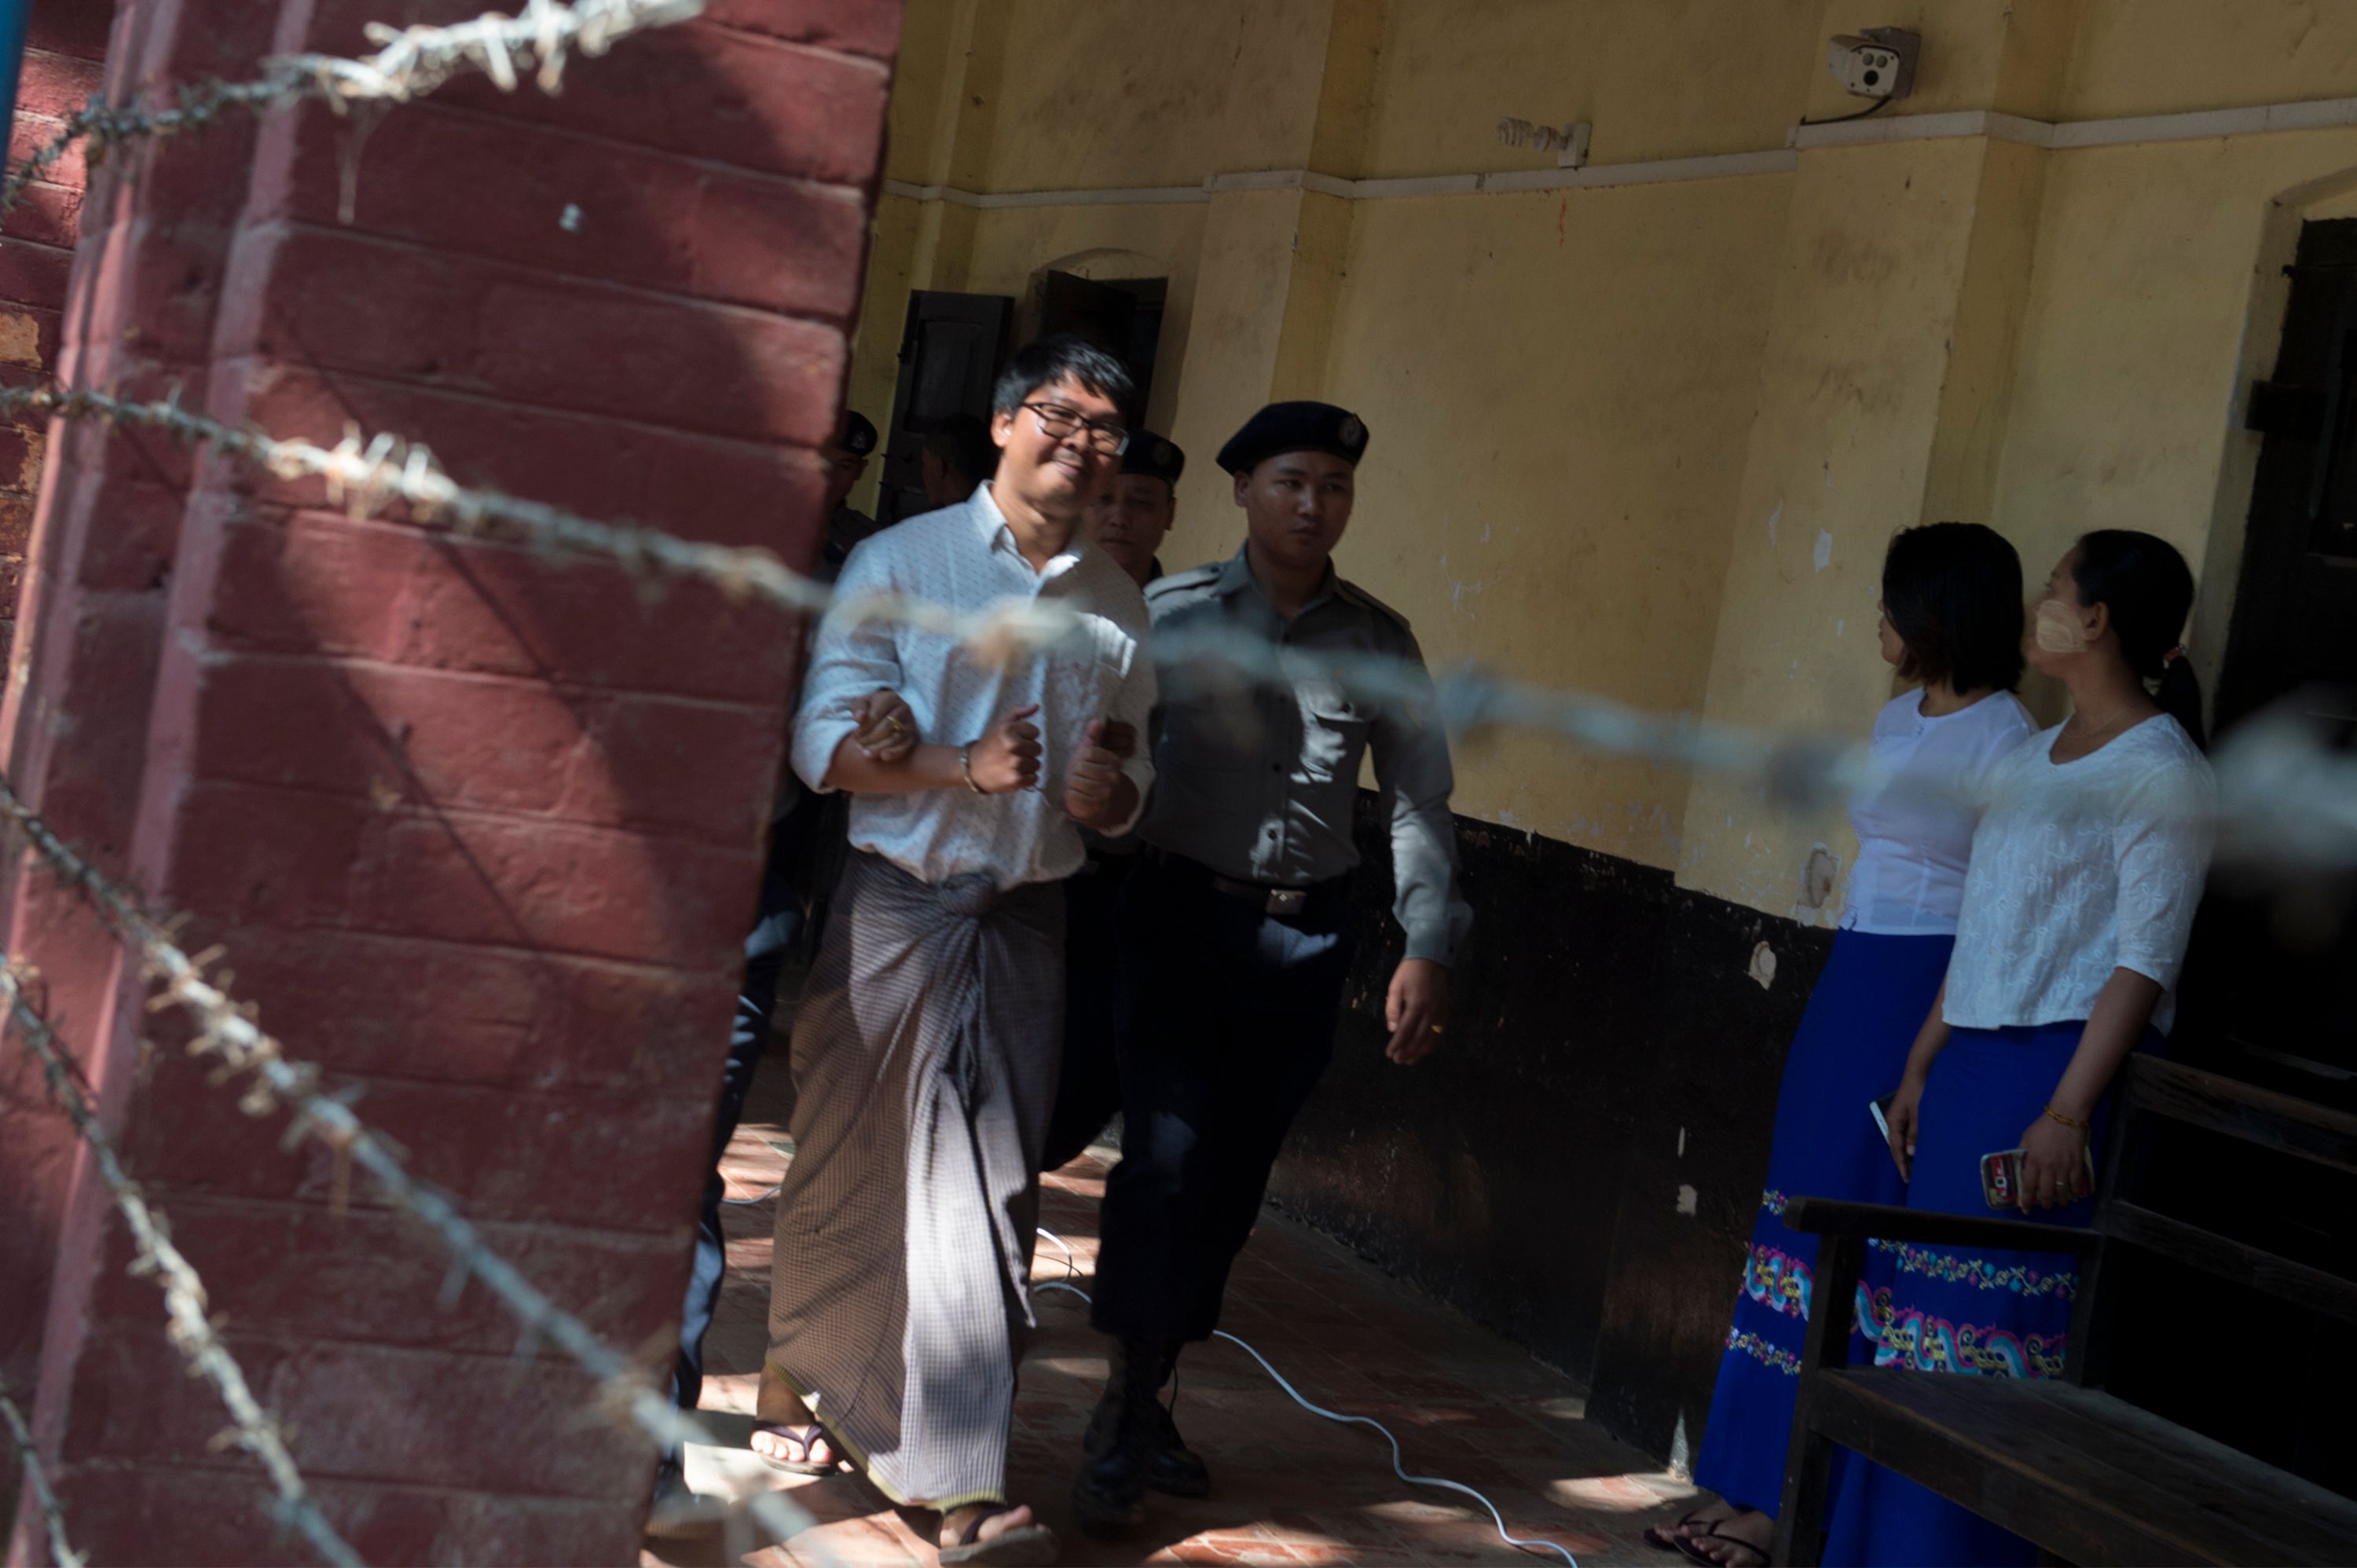 صحفى رويترز يبتسم للكاميرات قبل محاكمته فى ميانمار